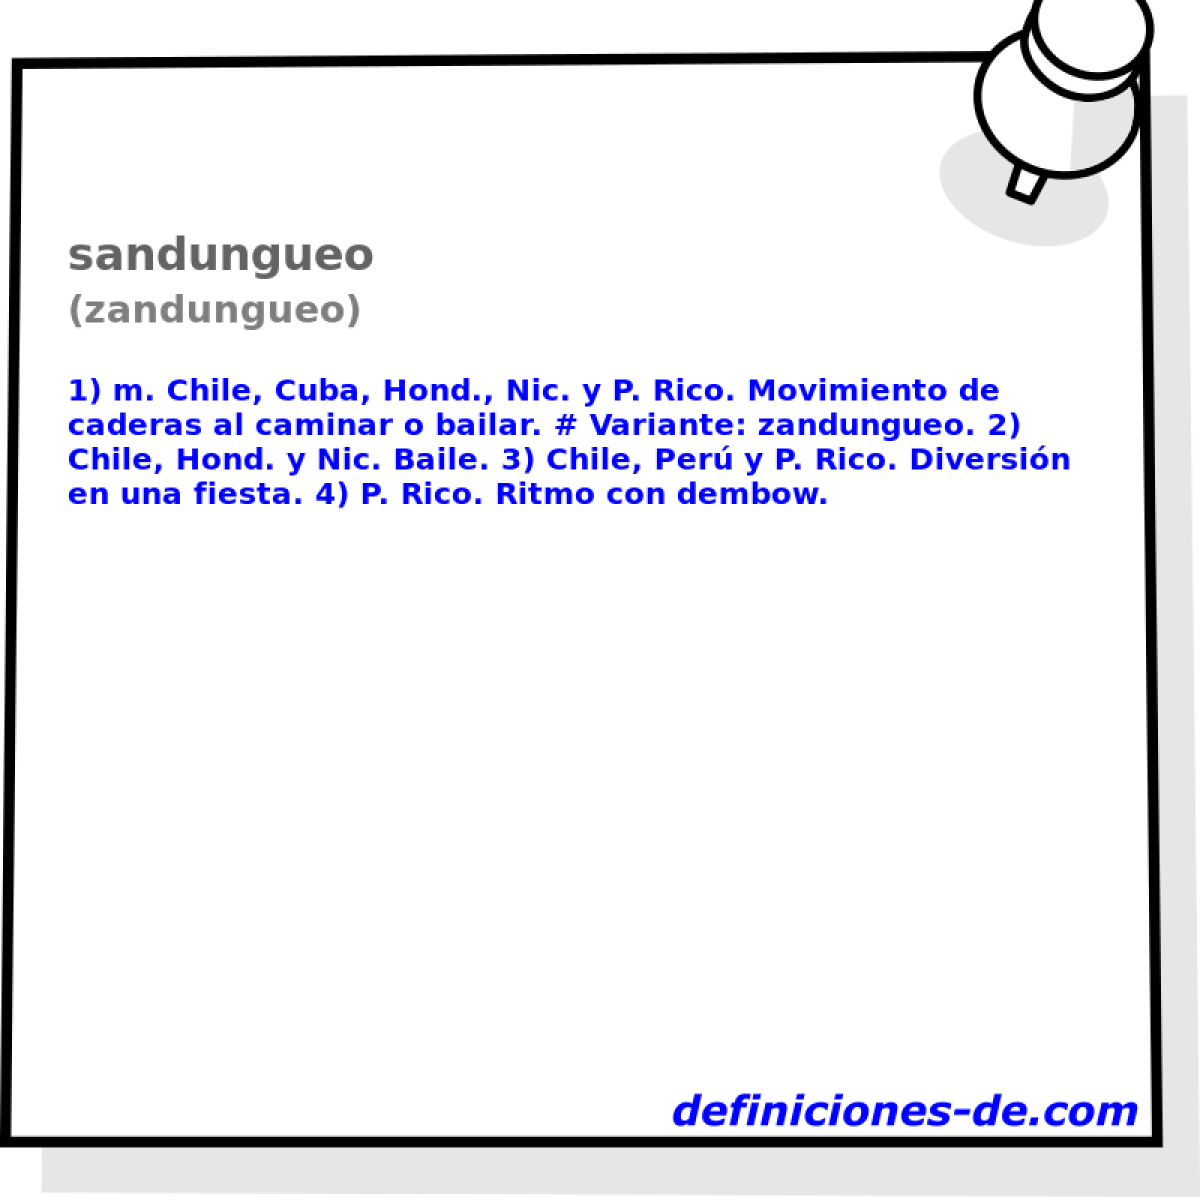 sandungueo (zandungueo)